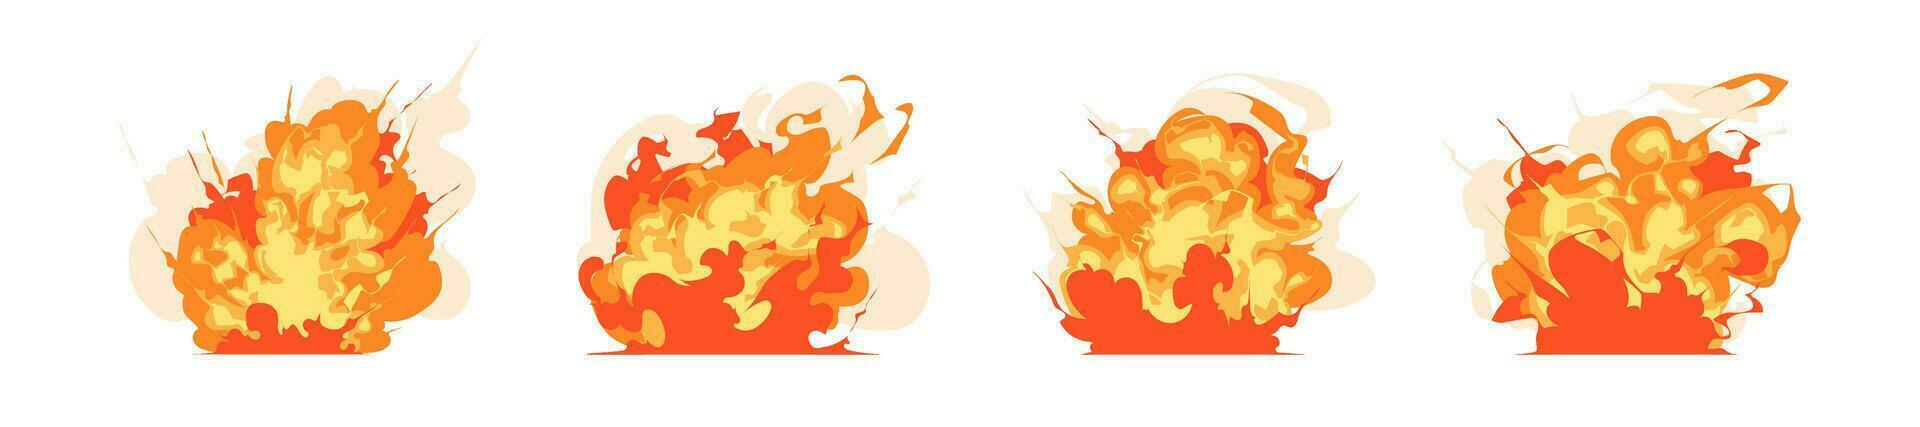 einstellen von Verbrennung Feuer spritzt Comic Spiel Wirkung, Explosion, Rauch, lodern, und Flamme Illustration vektor